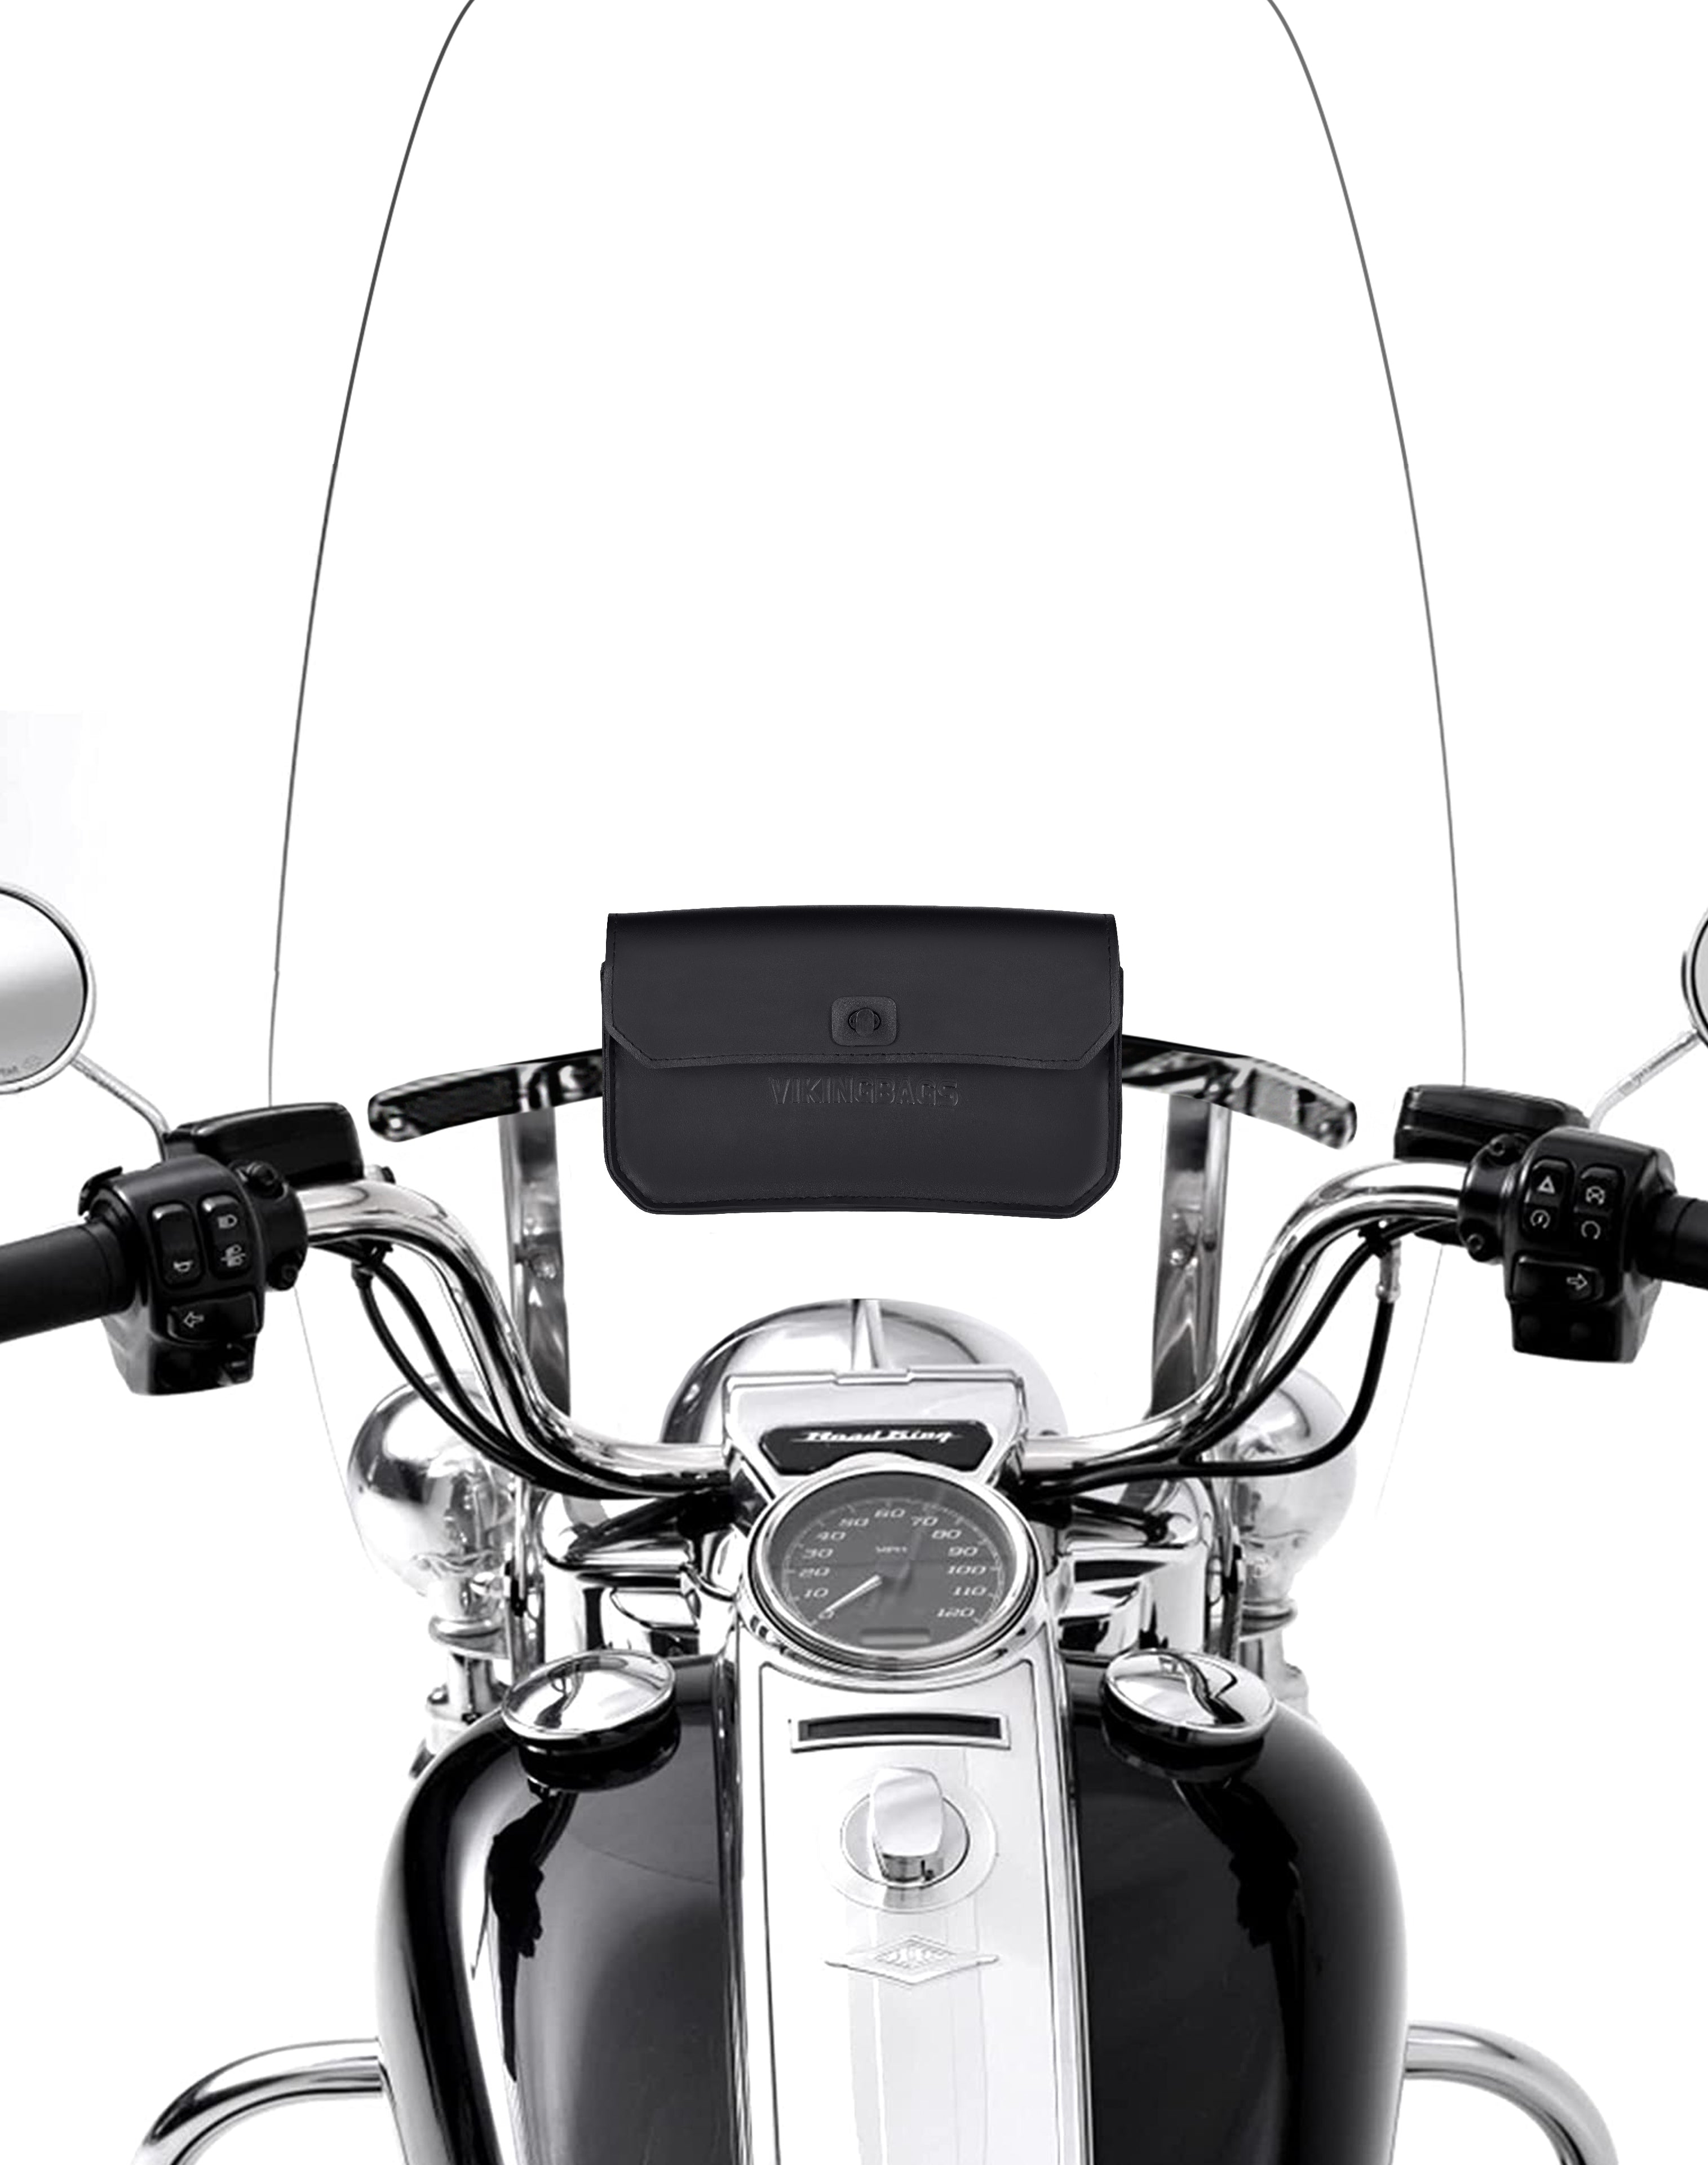 Viking Premium Universal Motorcycle Windshield Bag Closeup